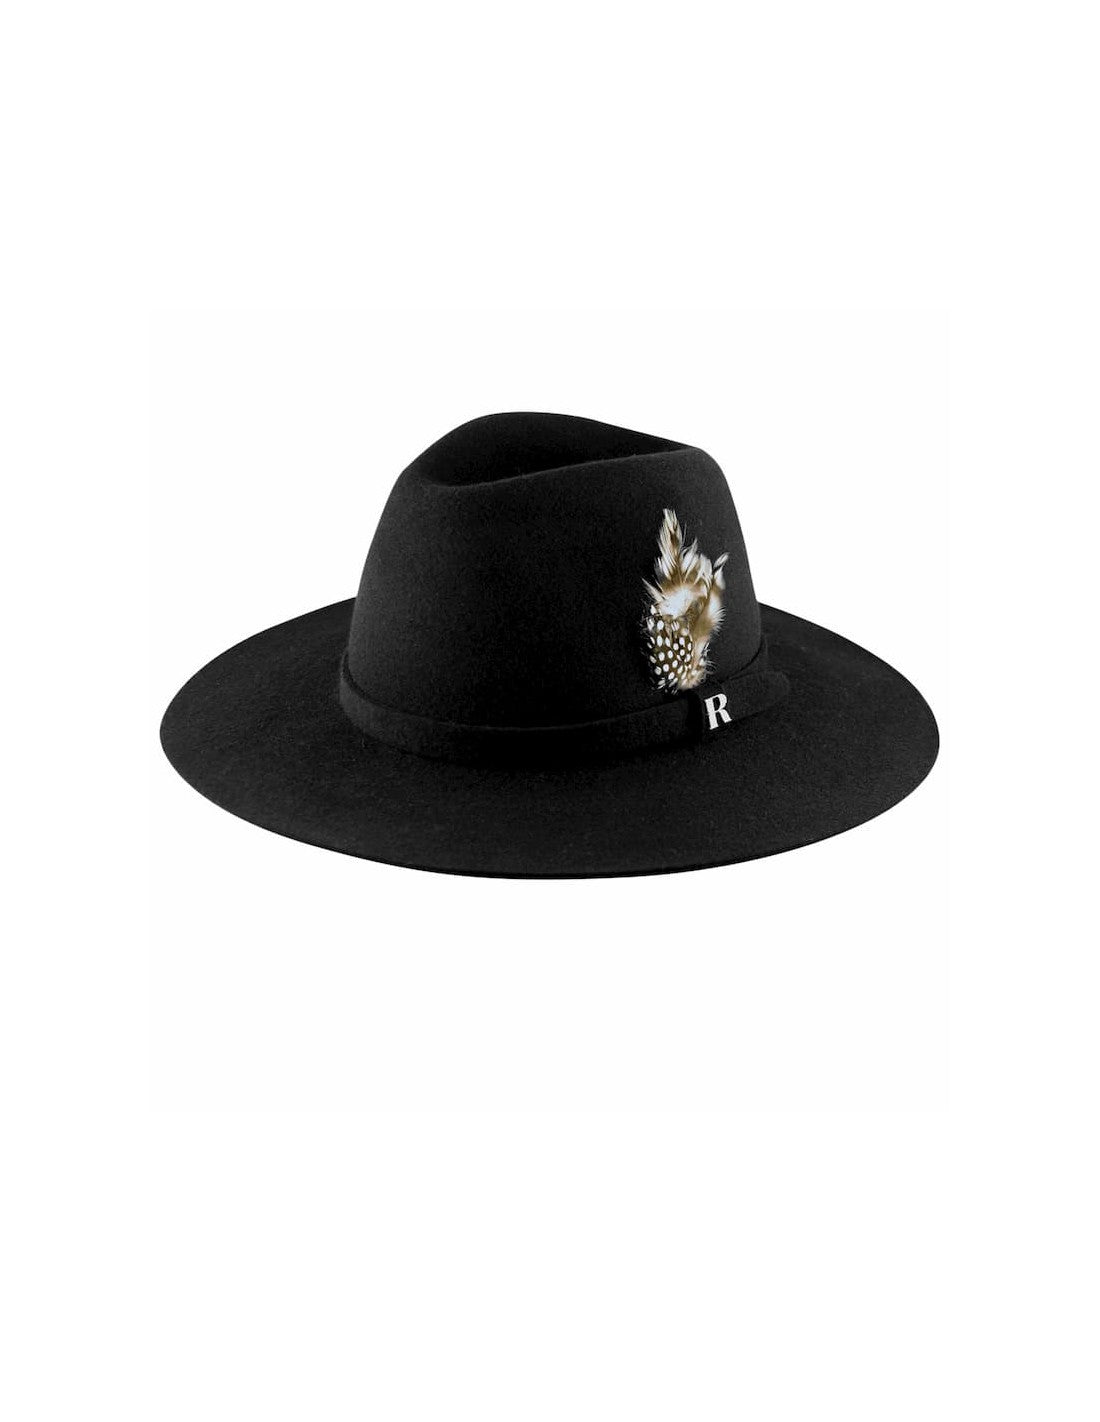 Sombrero Salter Fedora Negro Fieltro de Lana Raceu Hats - Bayolo Concept Store